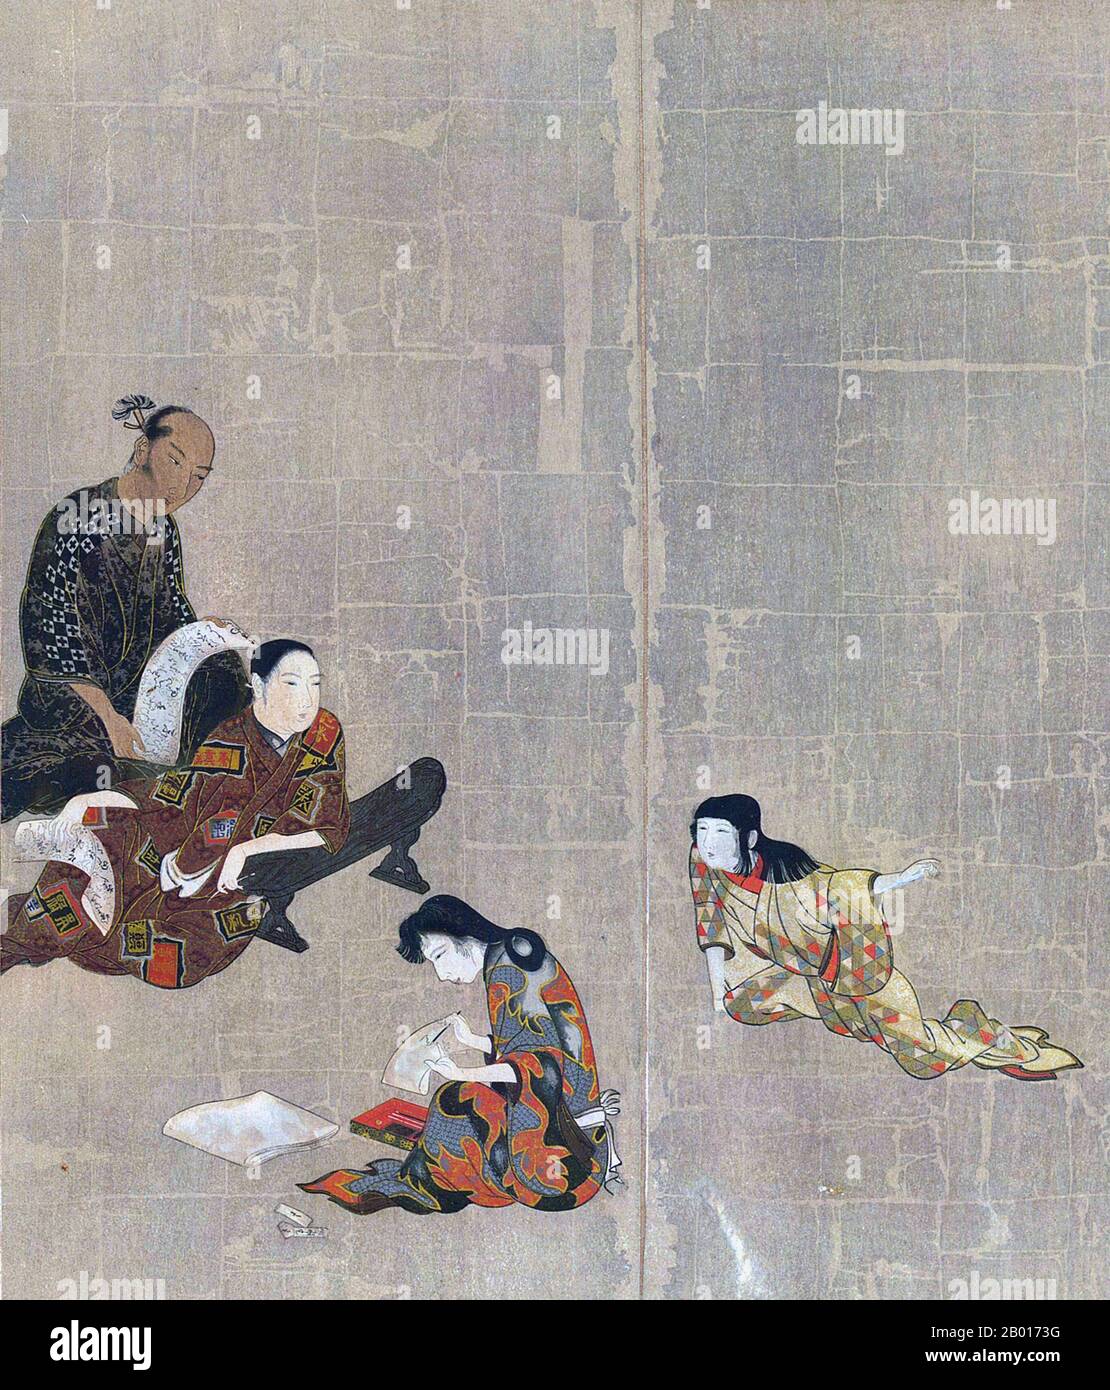 Japan: Ausschnitt aus dem Hikone-Bildschirm, ein Byobu-Faltbild, c. 1624-1644. Der Hikone-Bildschirm war ein Byobo-Faltbildschirm aus der Kan'ei-Ära (c. 1624-1644) der Edo-Periode. Auf Blattgold gemalt und in sechs Teile zusammenklappbar, zeigt der Bildschirm die Vergnügungsviertel von Kyoto, wo Menschen Musik und Spiele spielen. Es ist ein Vertreter der frühen modernen japanischen Genre Malerei, und von einigen als die frühesten Ukiyo-e Kunstwerk gesehen. 1955 wurde es zum Nationalen Schatz ernannt. Stockfoto